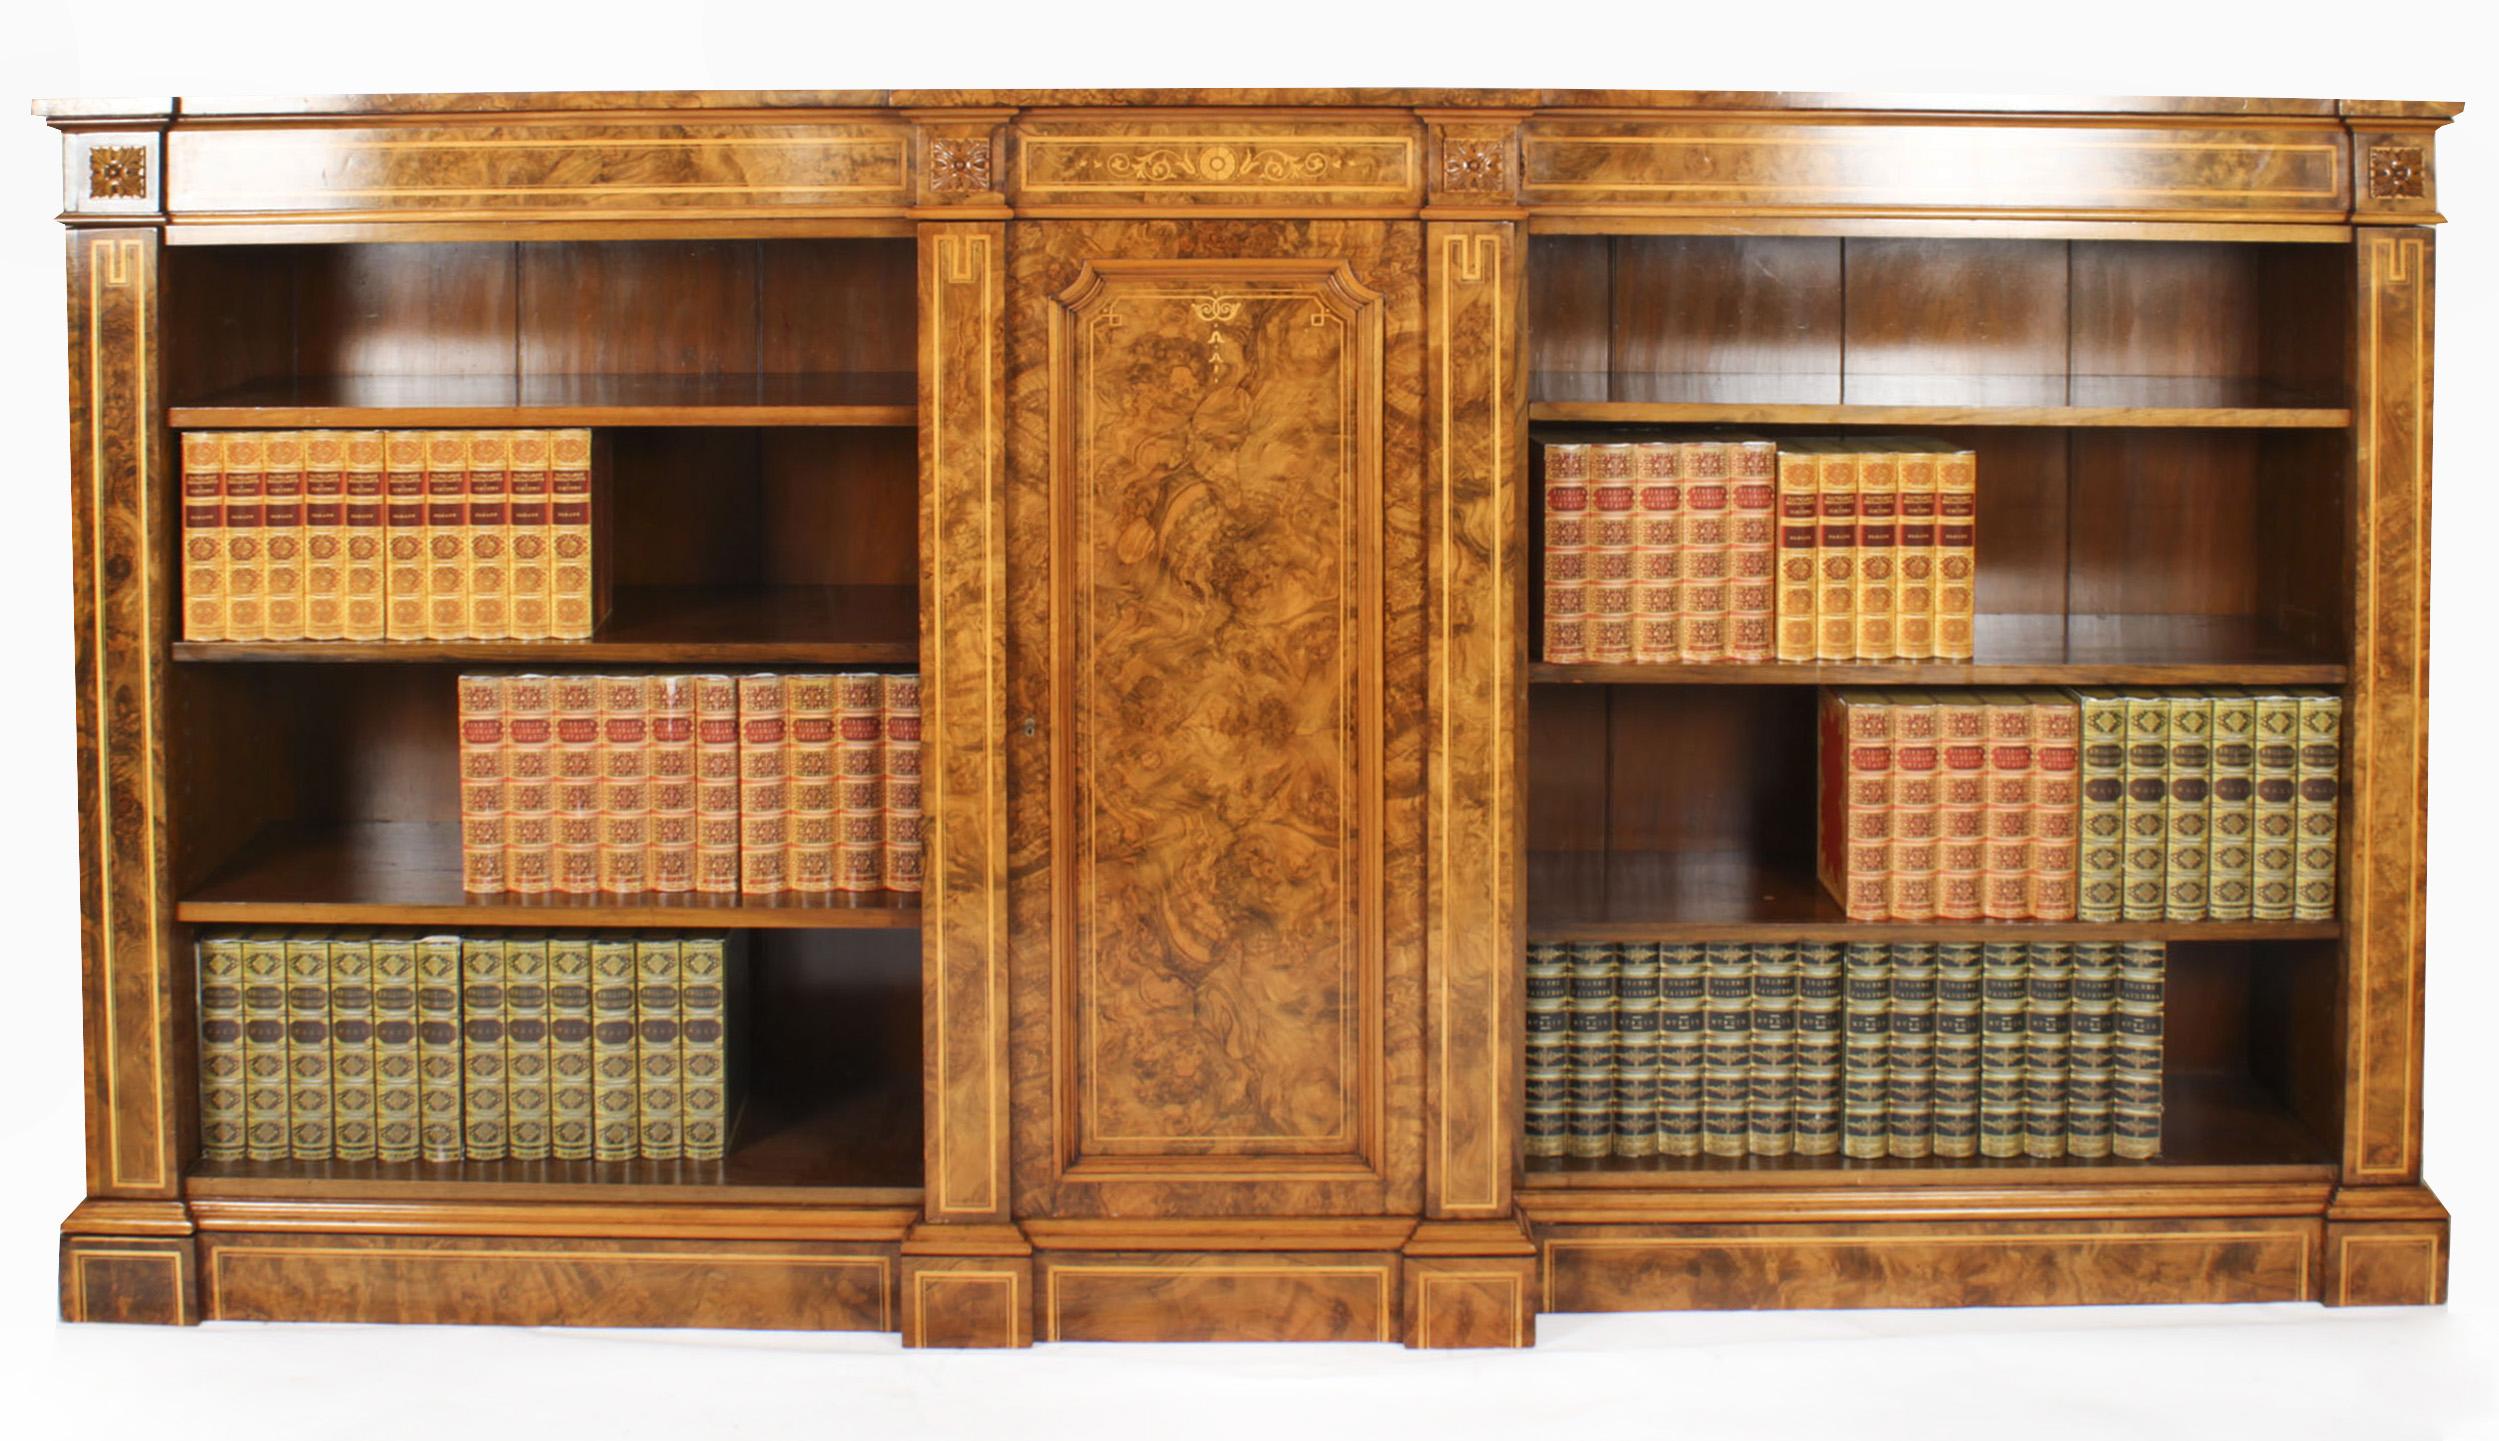 Dies ist eine hervorragende antike viktorianische Wurzelnuss und Intarsien Breakfront offenes Bücherregal, ca. 1860 in Datum.
 
Das Bücherregal ist mit einer schönen Querbordüre aus satiniertem Holz und vier geschnitzten Anthemion-Plaketten